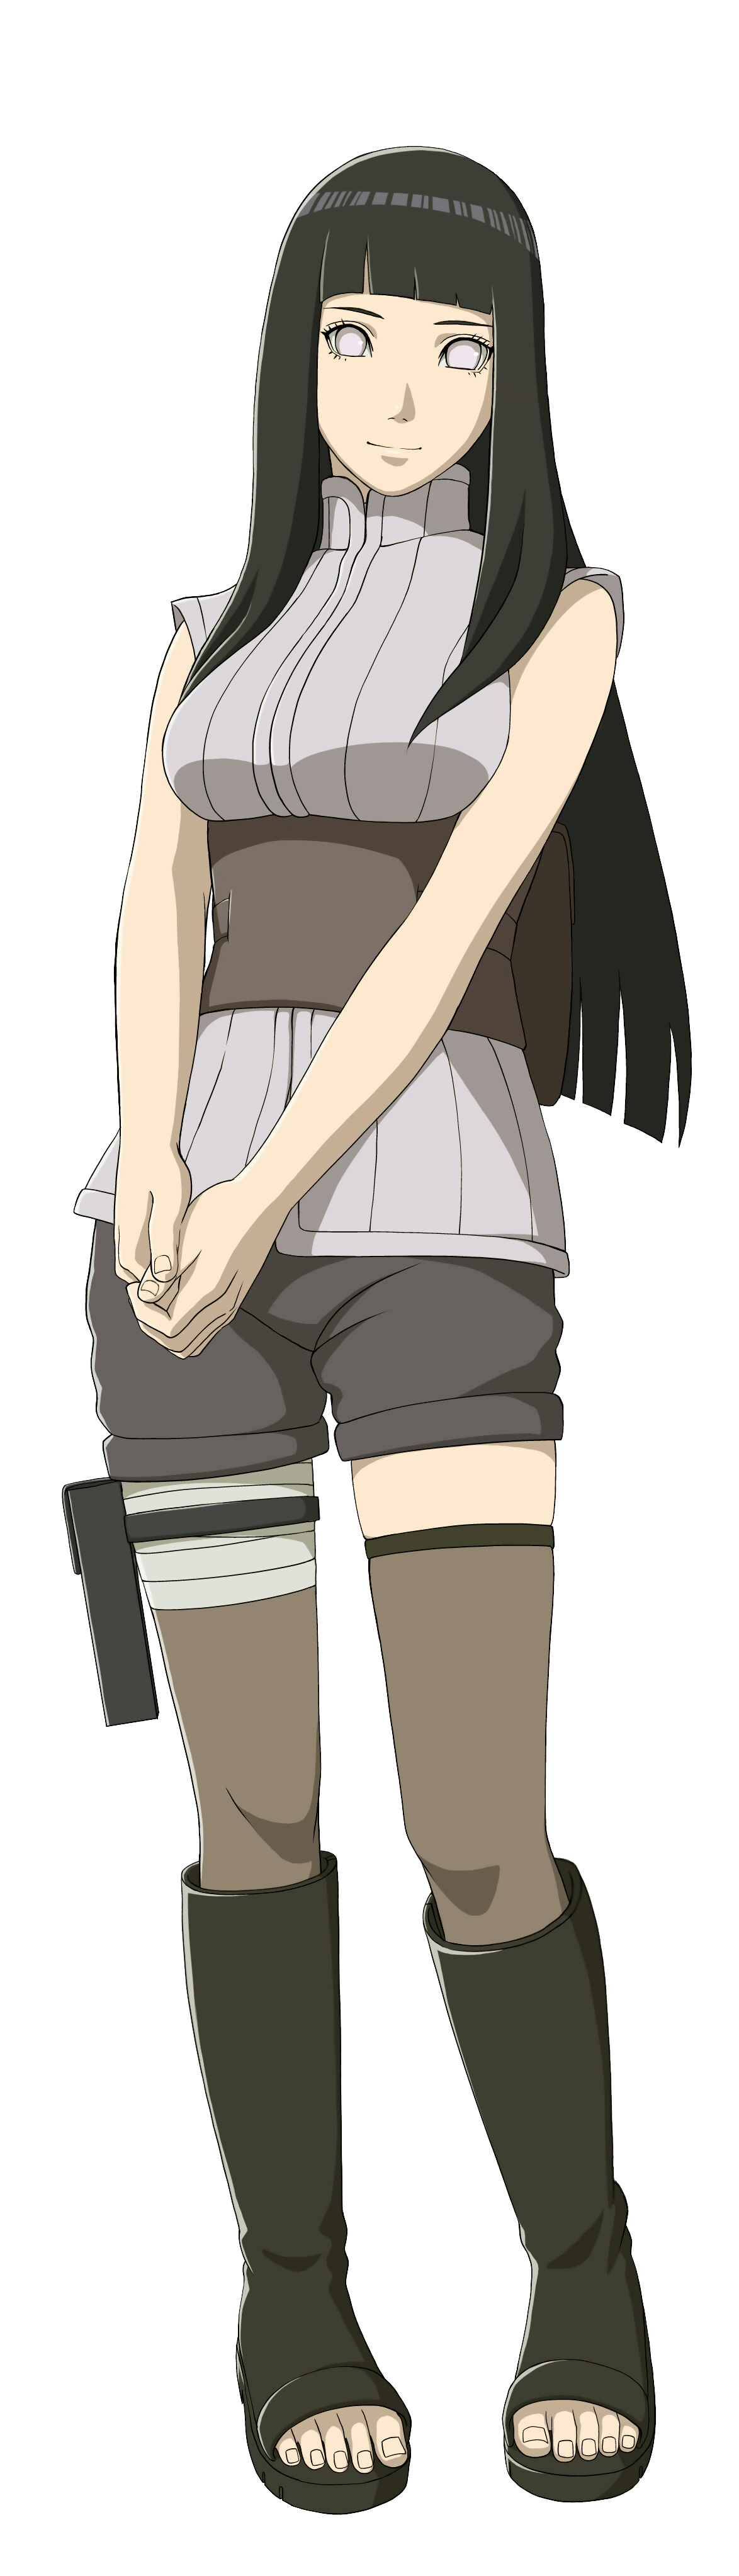 THEOTAKUNETWORK HINATA CHARACTER ANALYSIS  Anime Amino